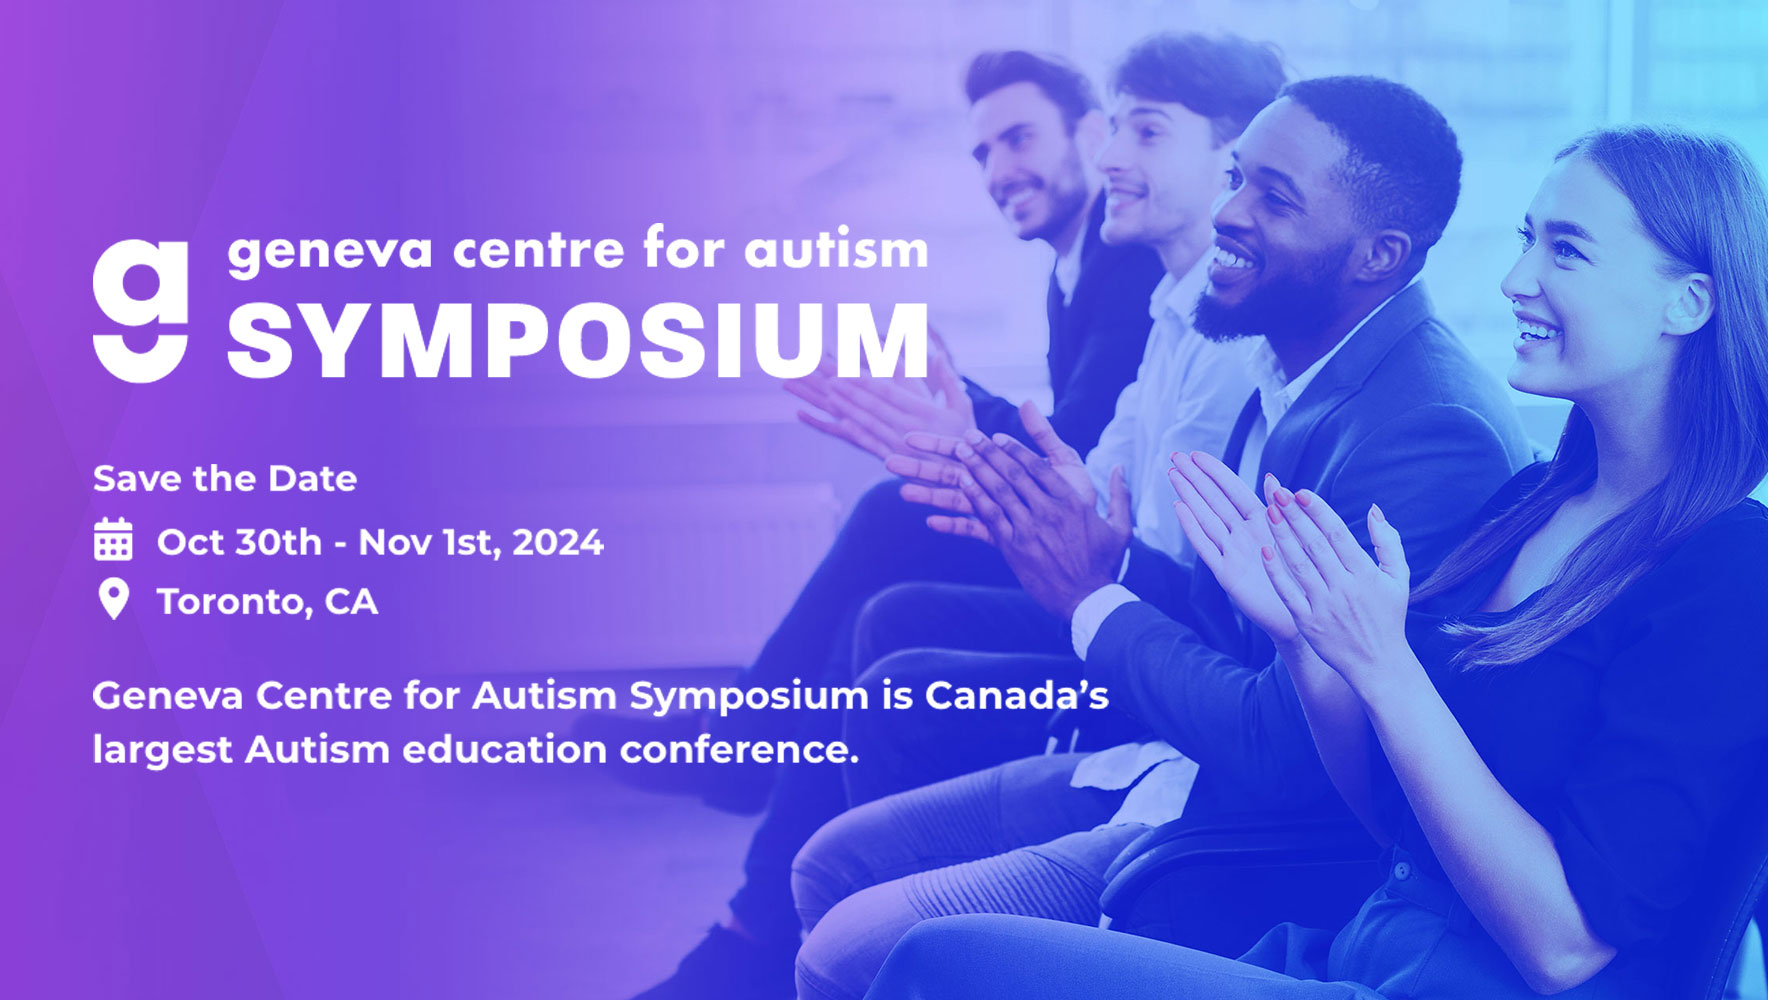 Geneva Centre for Autism Symposium